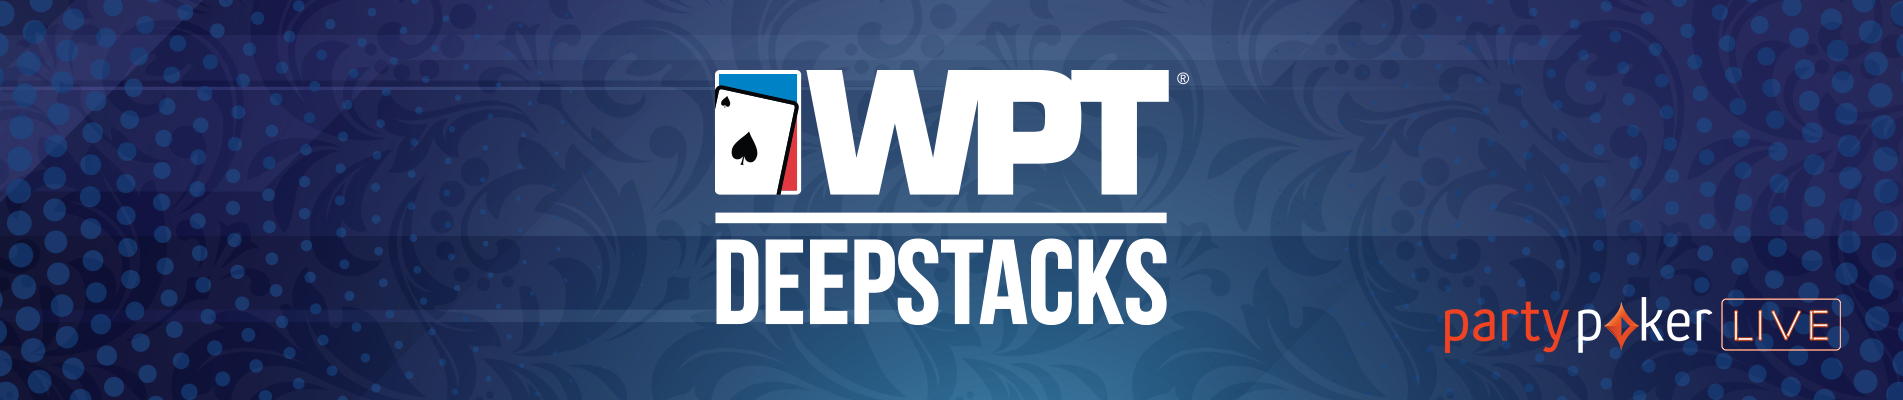 WPT Deepstacks 2020